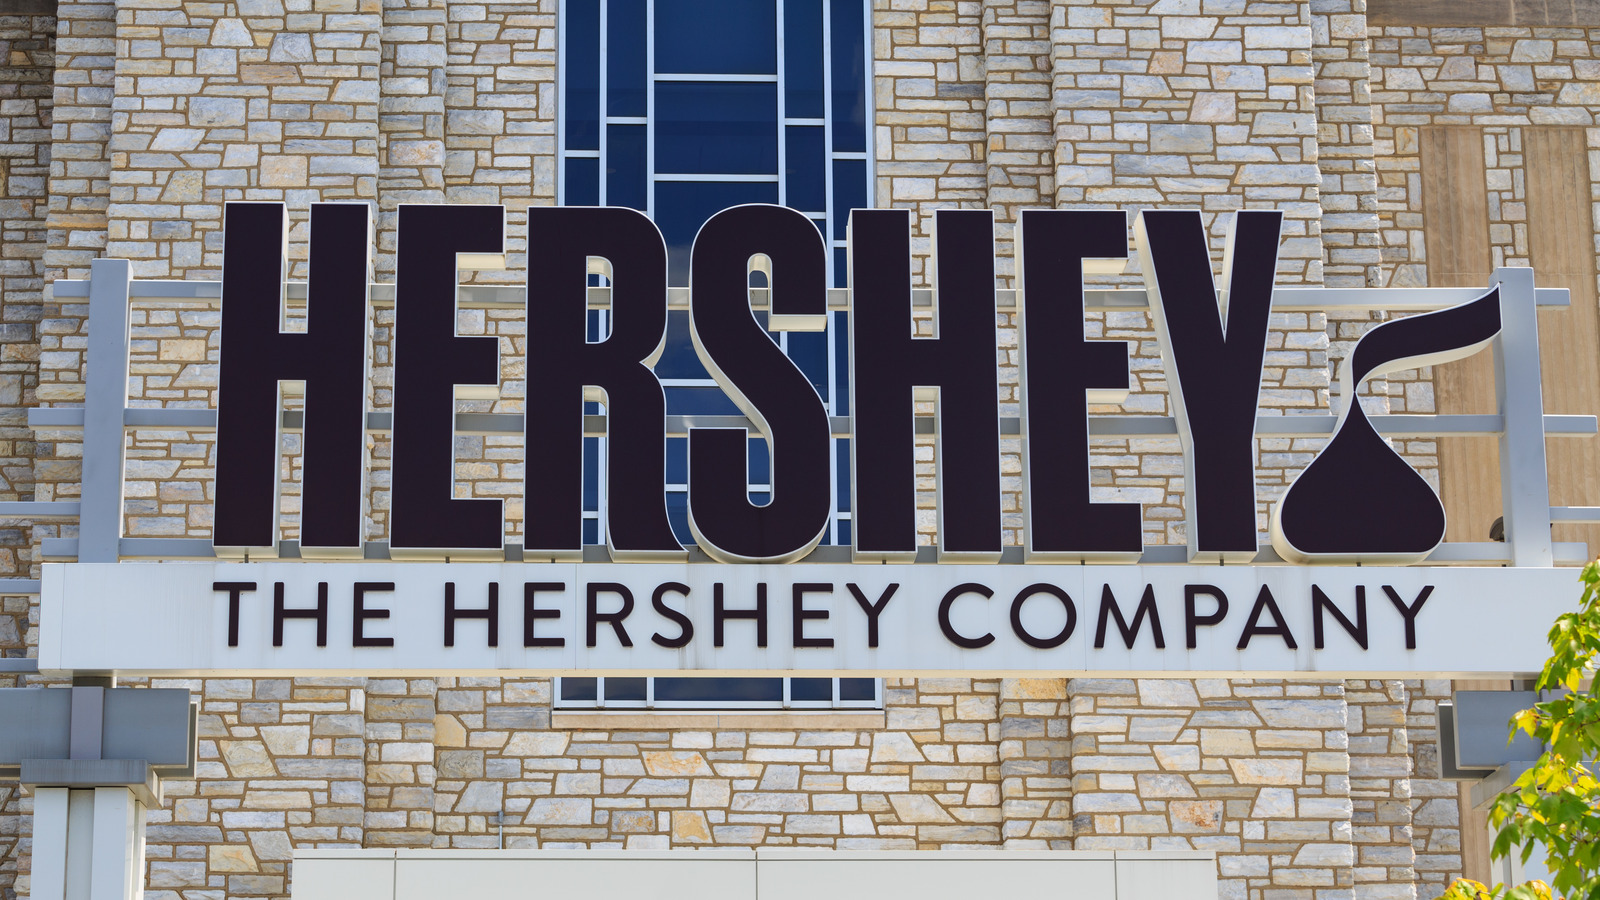 The hershey company. Фабрика компания Херши. The Hershey Company продовольственные компании. Hershey город в США.